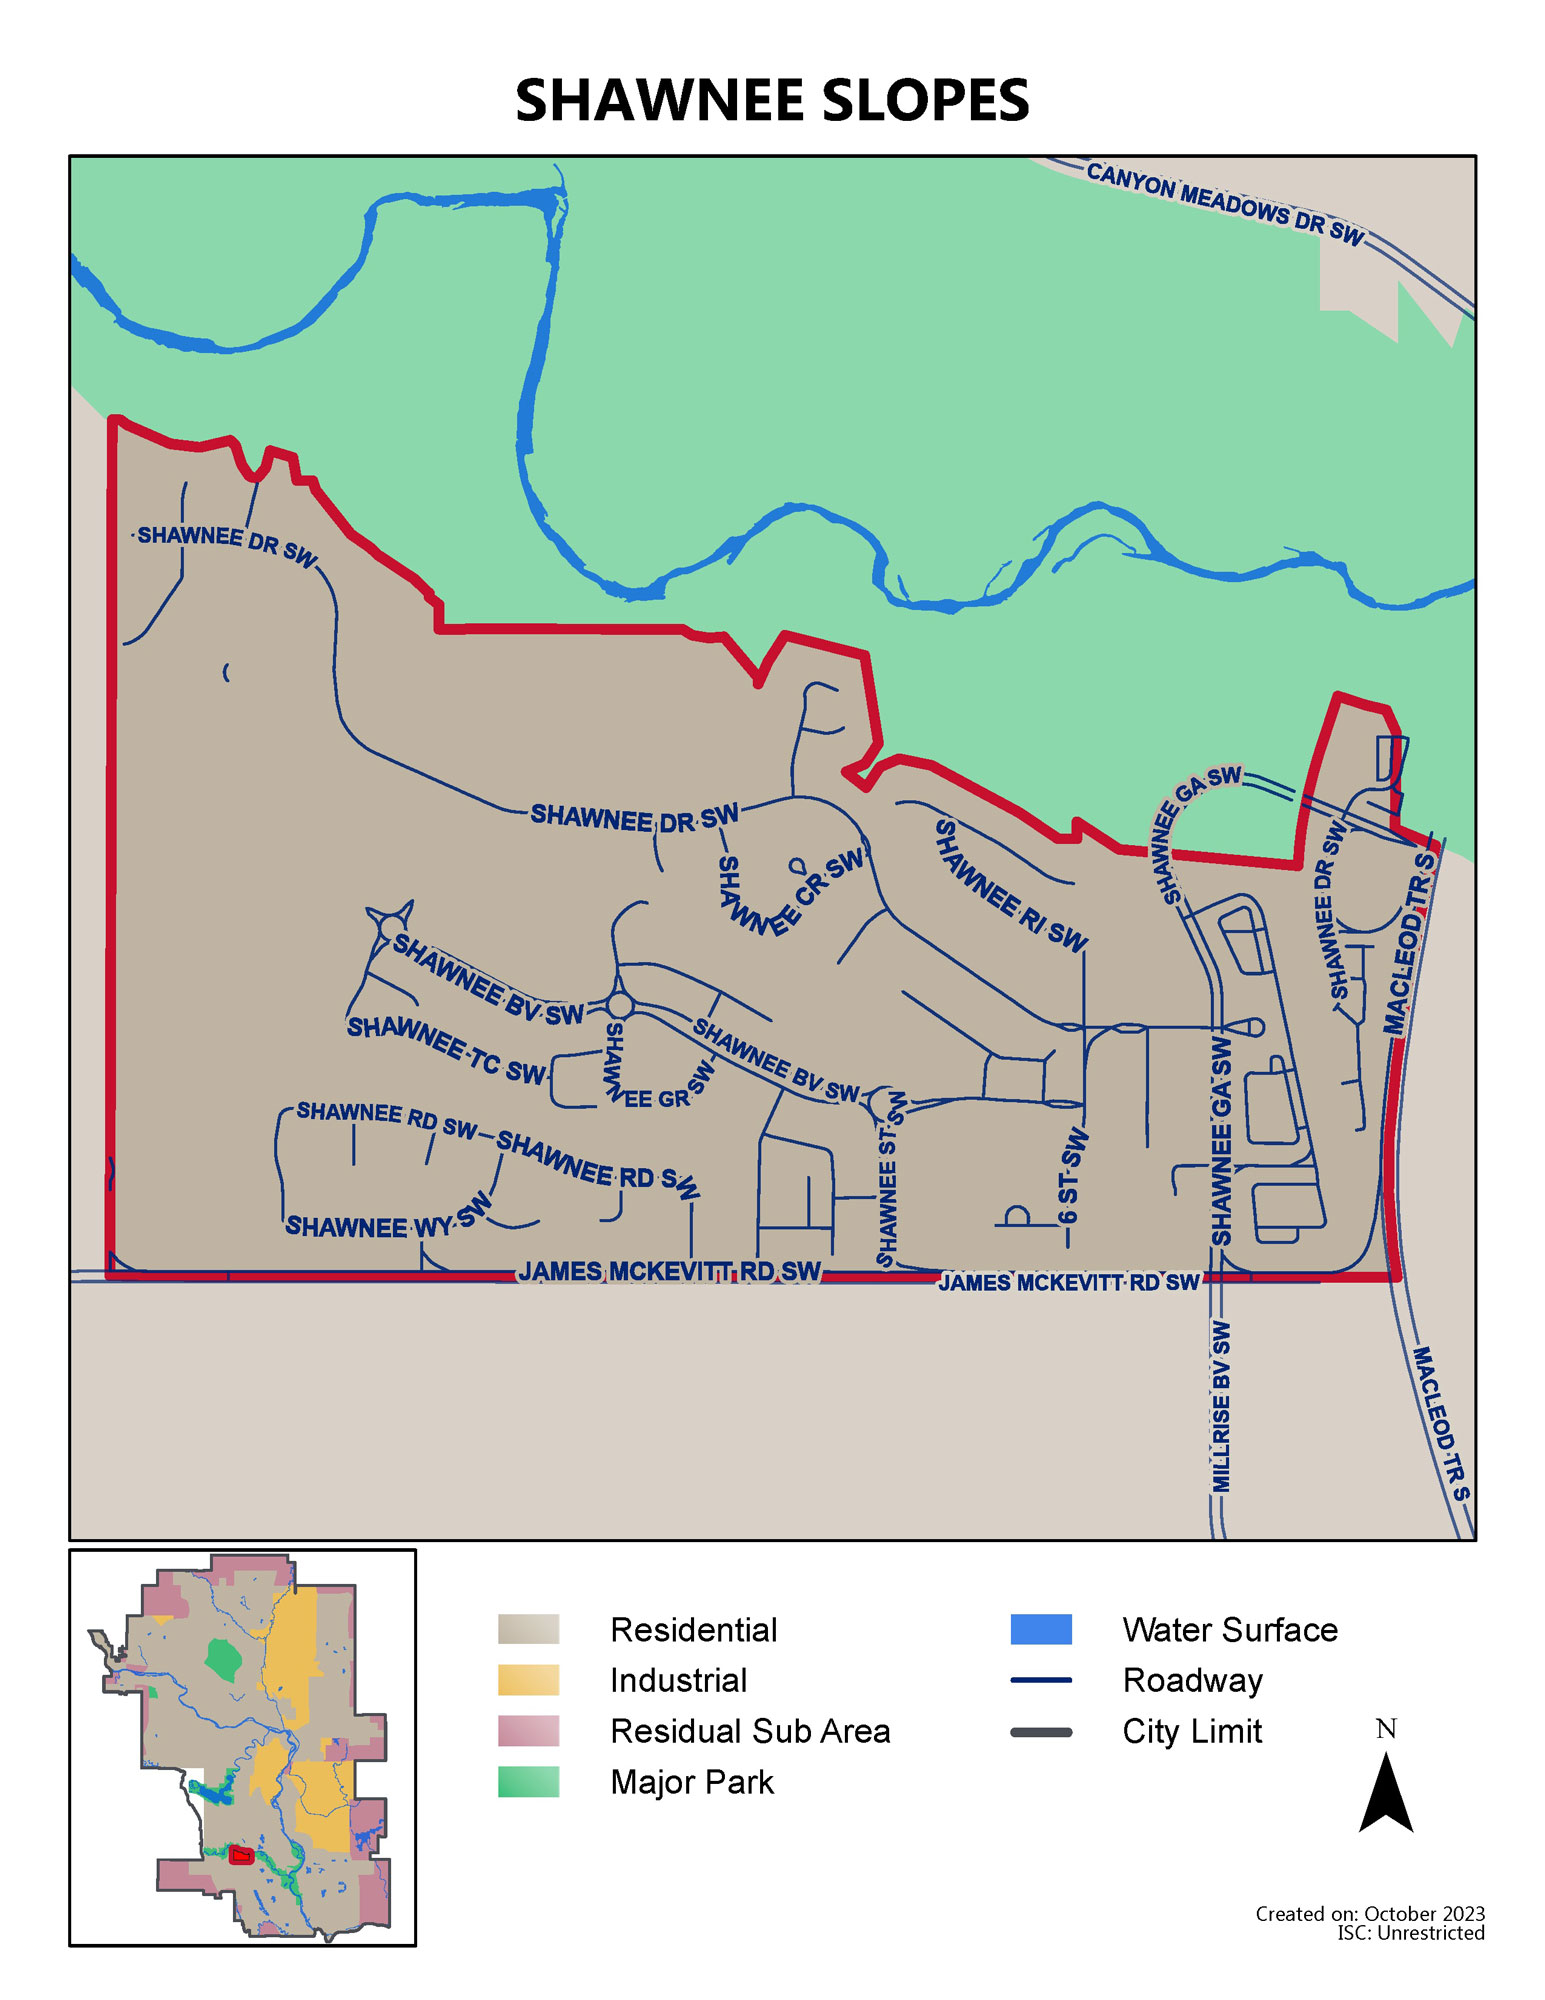 Shawnee Slopes map